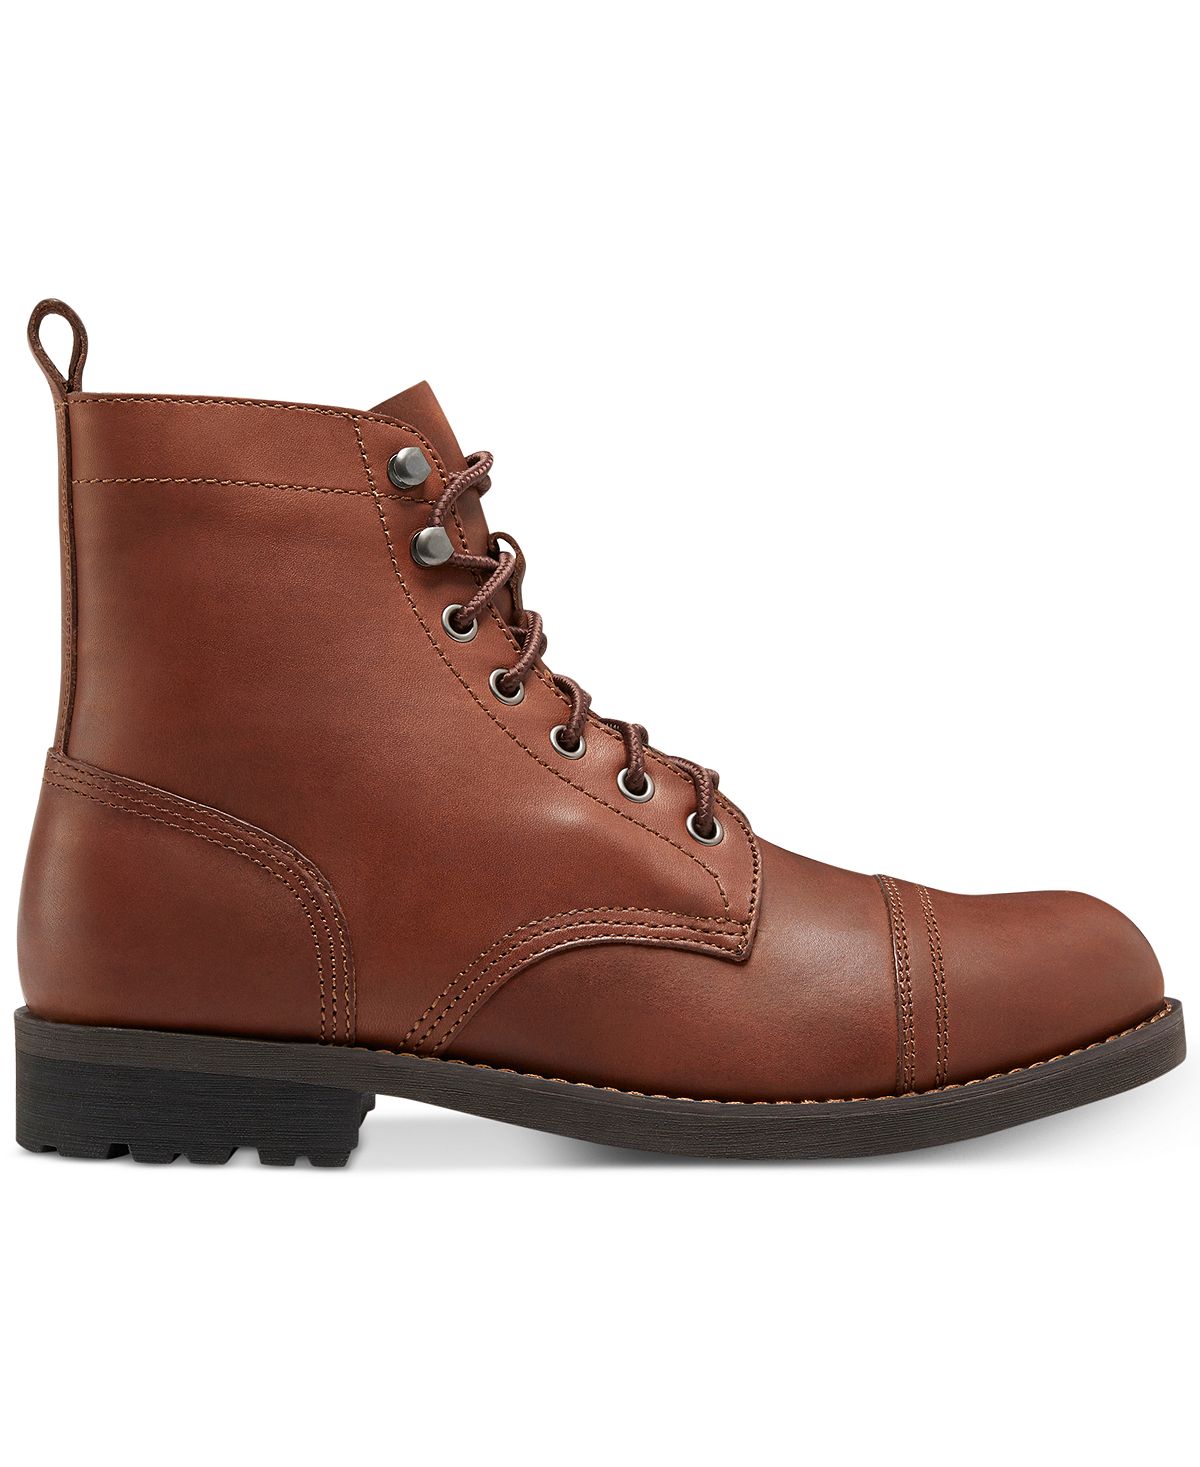 Мужские ботинки eastland jayce Eastland Shoe, коричневый – заказать повыгодной цене из-за рубежа в «CDEK.Shopping»